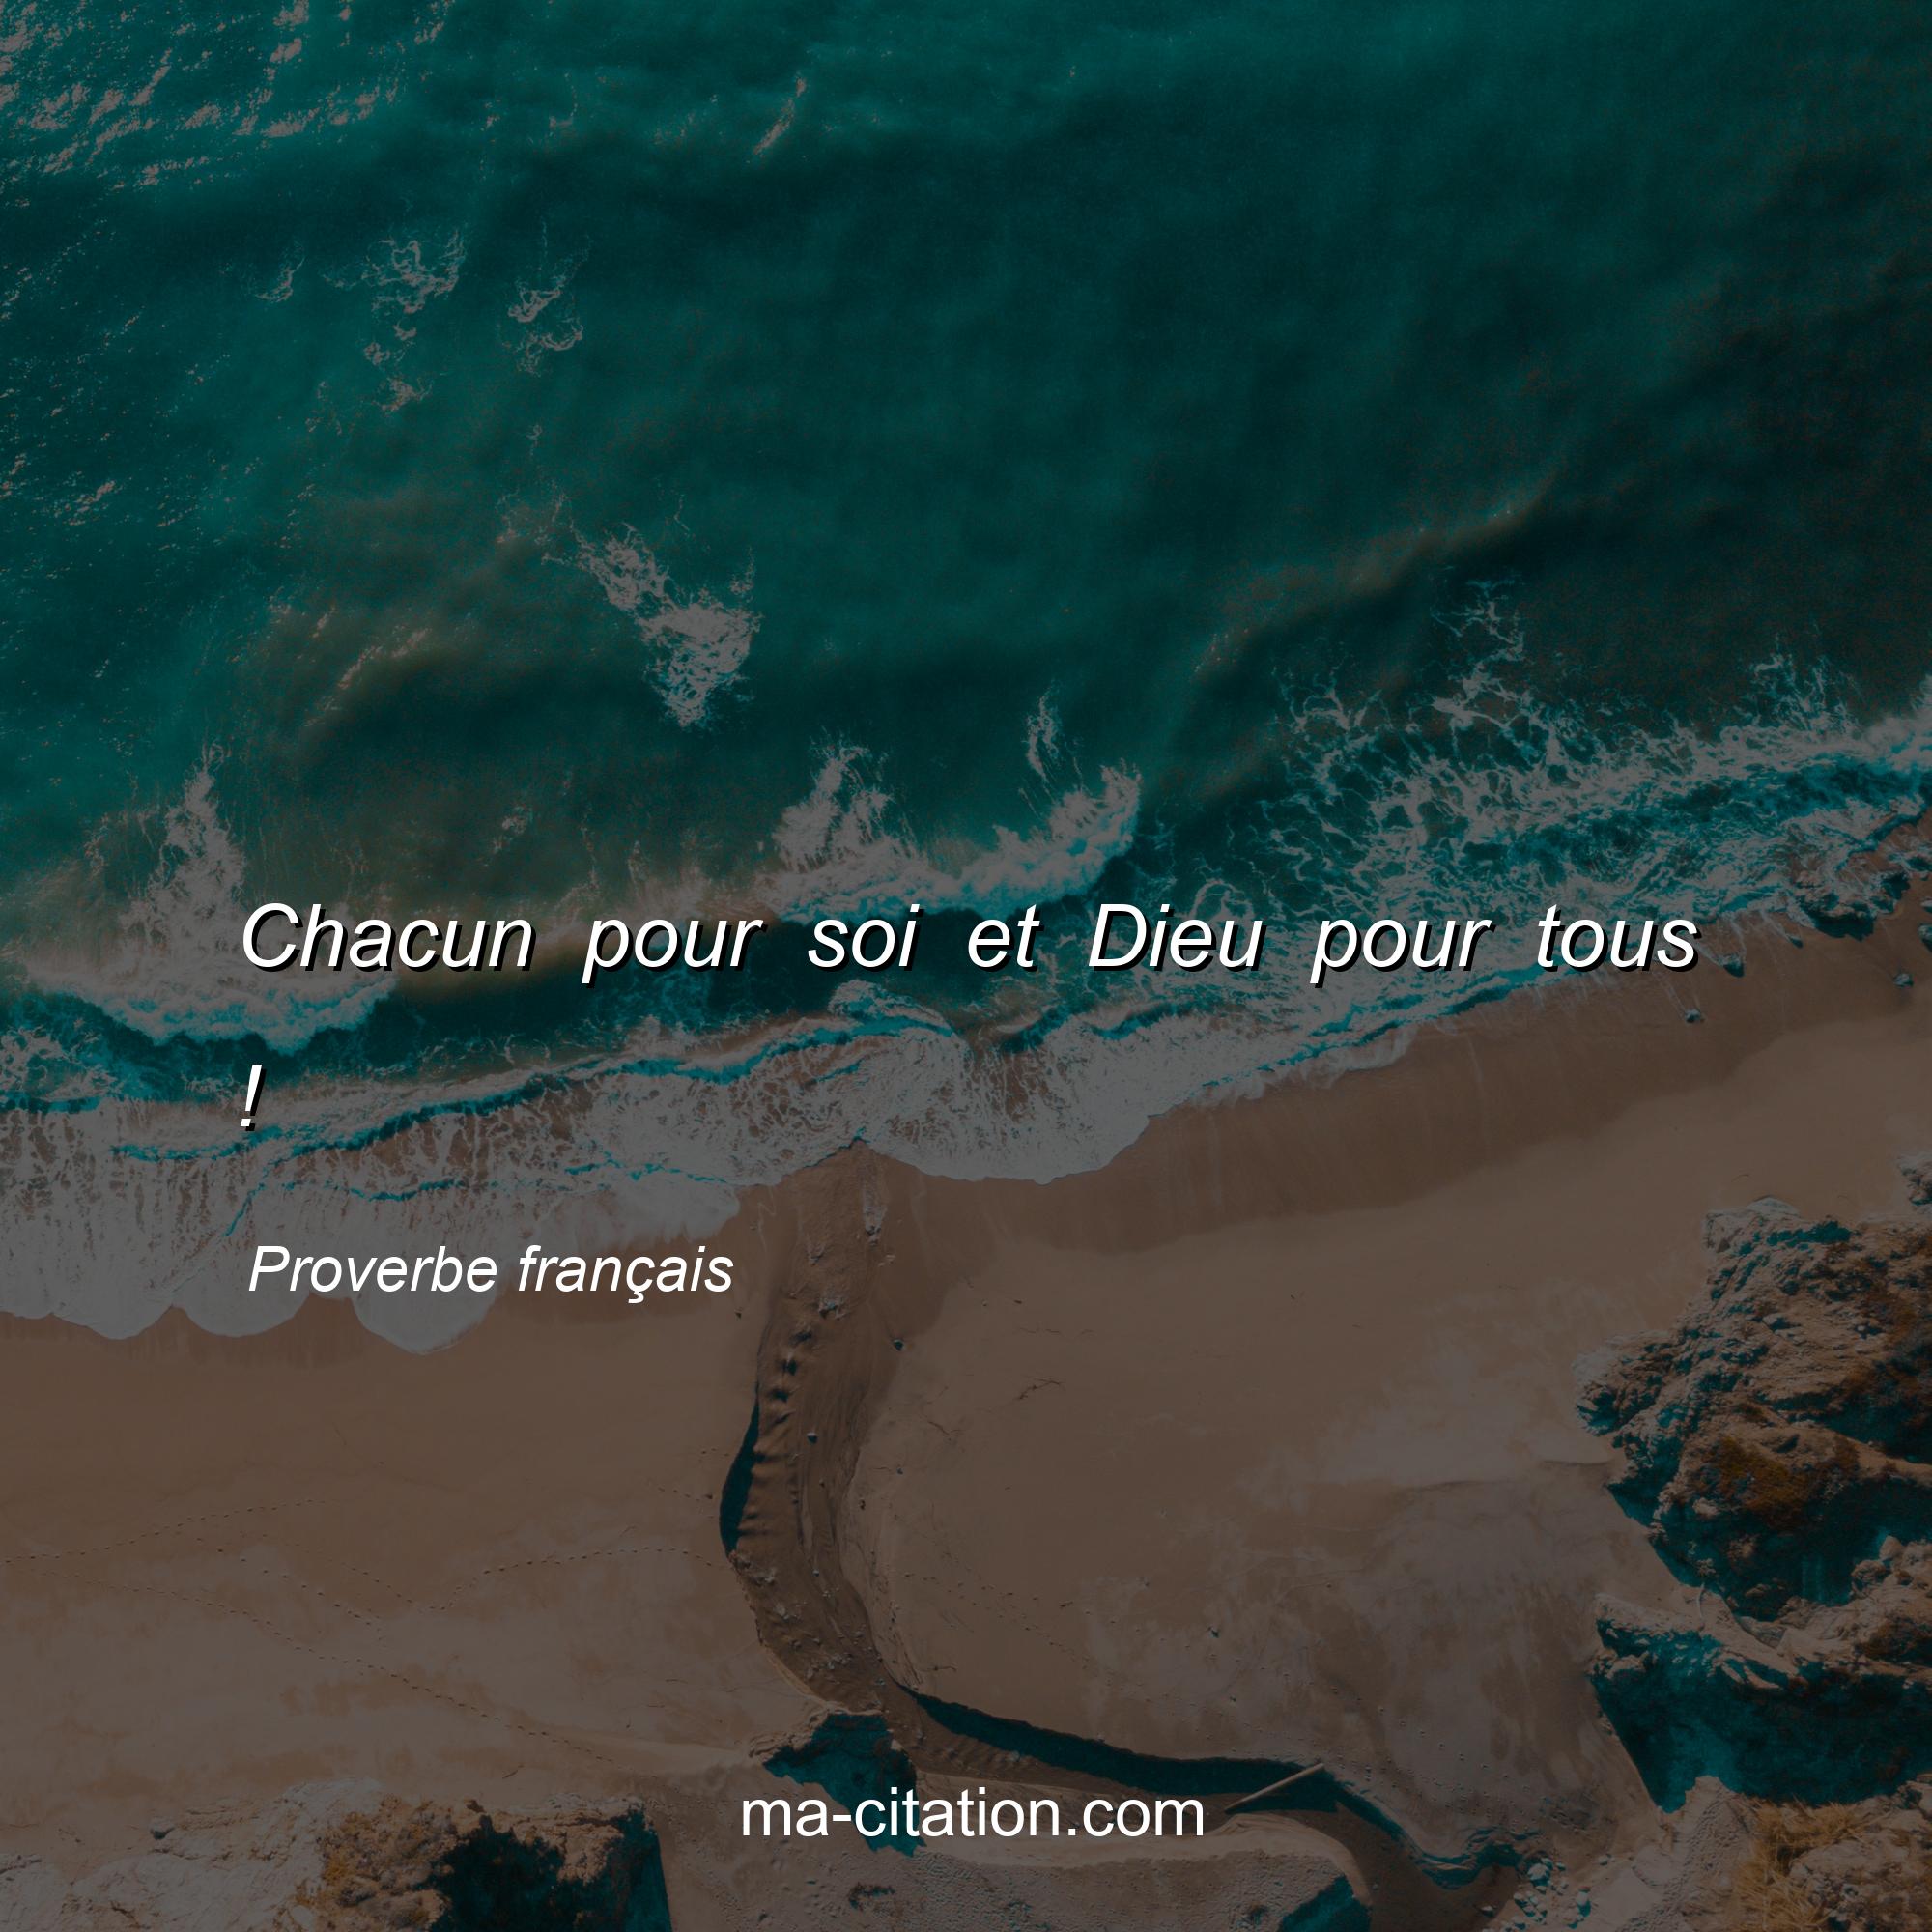 Proverbe français : Chacun pour soi et Dieu pour tous !